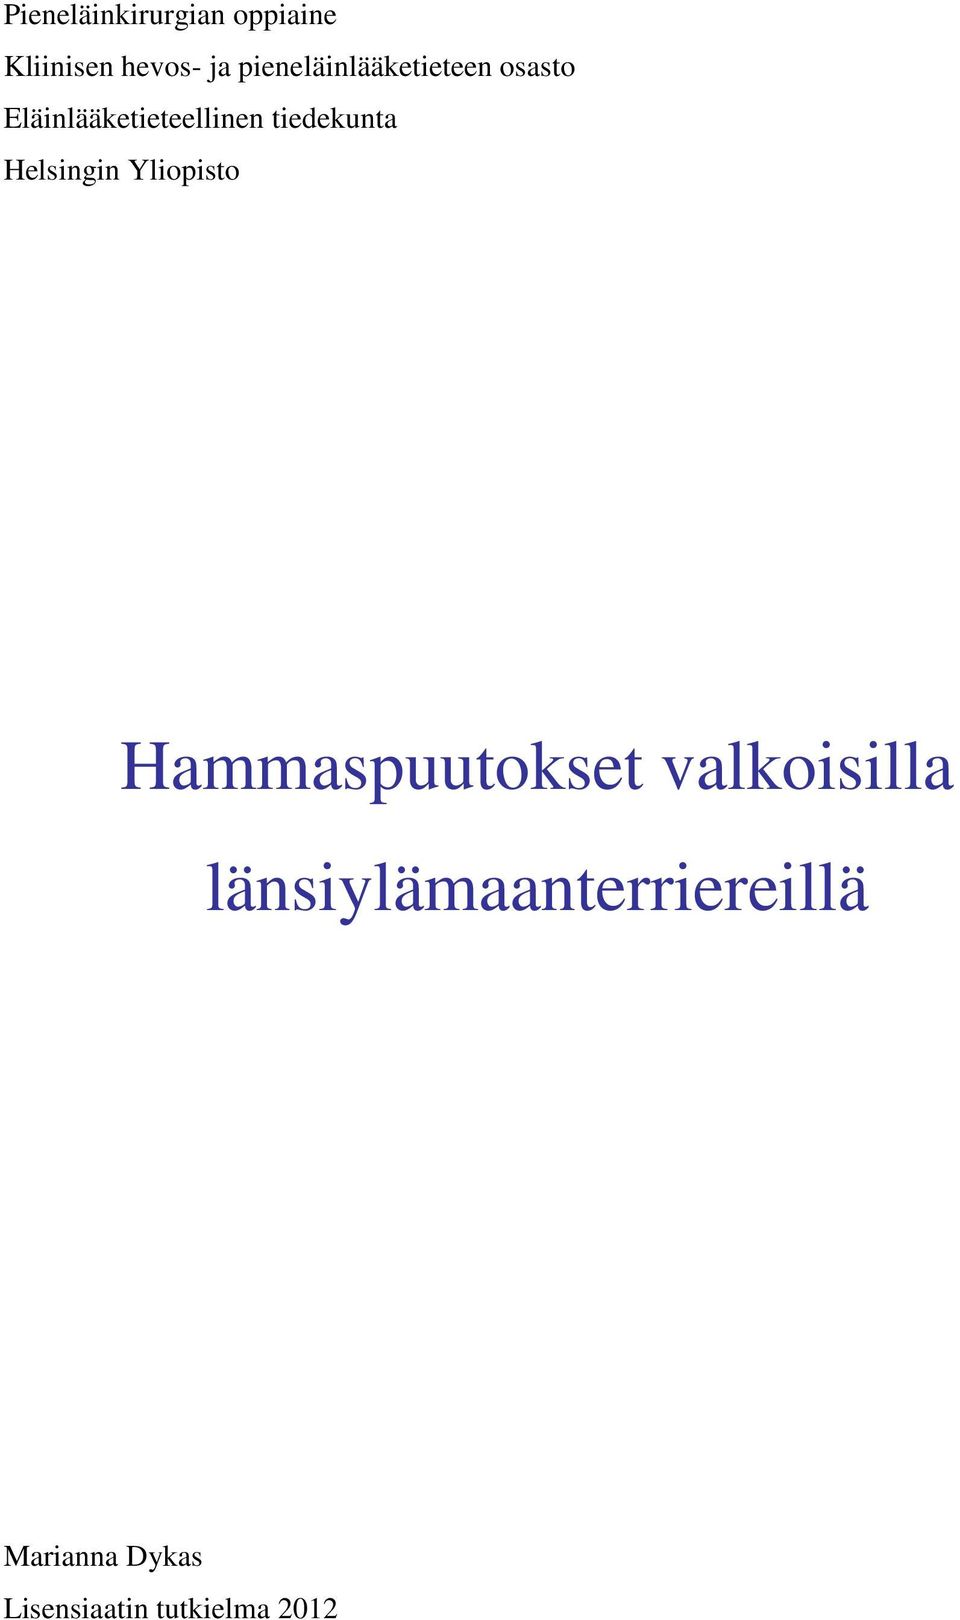 tiedekunta Helsingin Yliopisto Hammaspuutokset